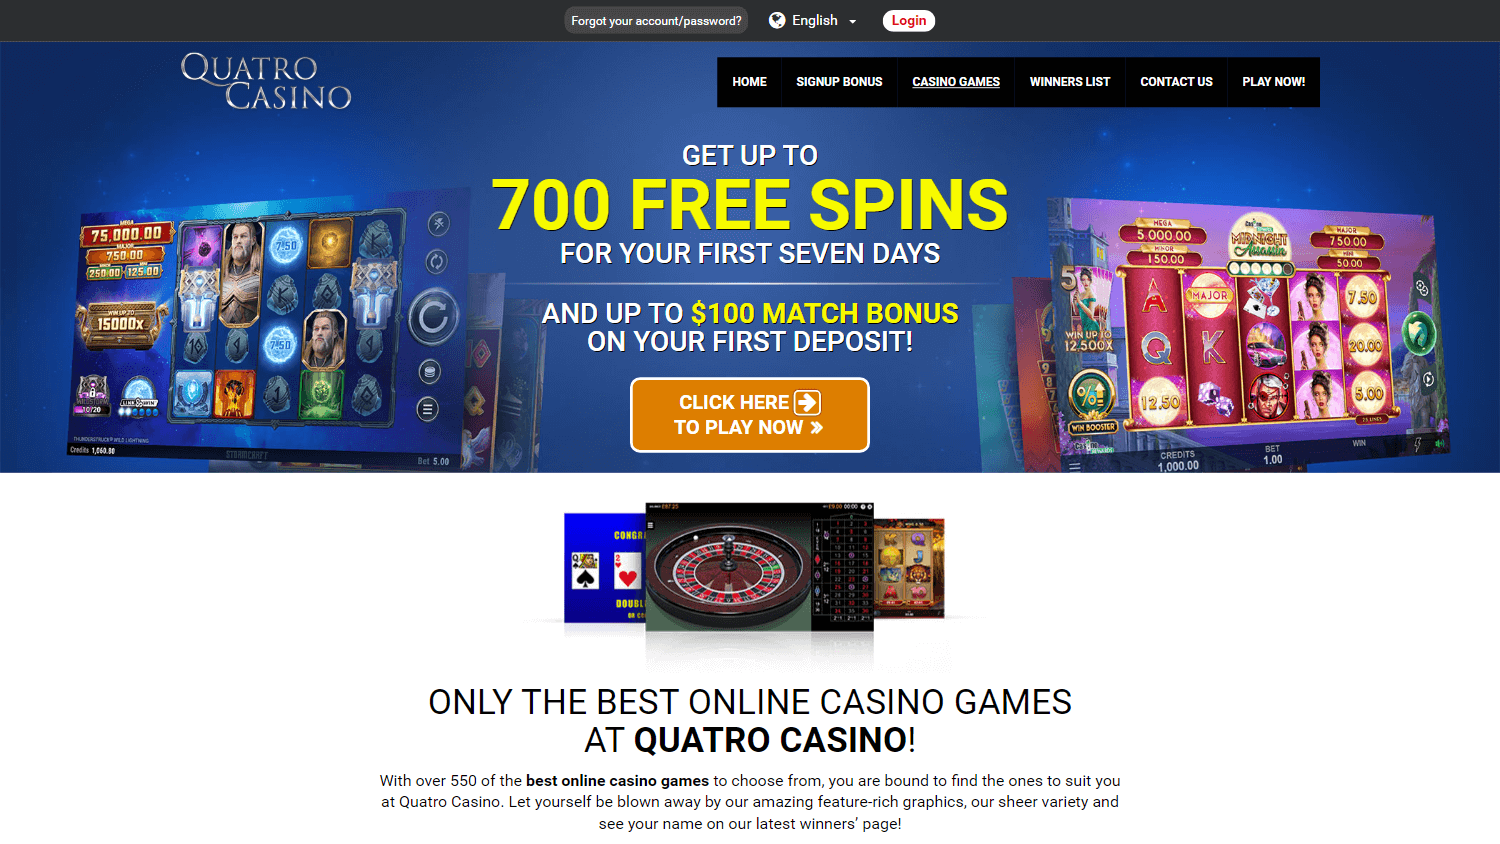 quatro_casino_game_gallery_desktop